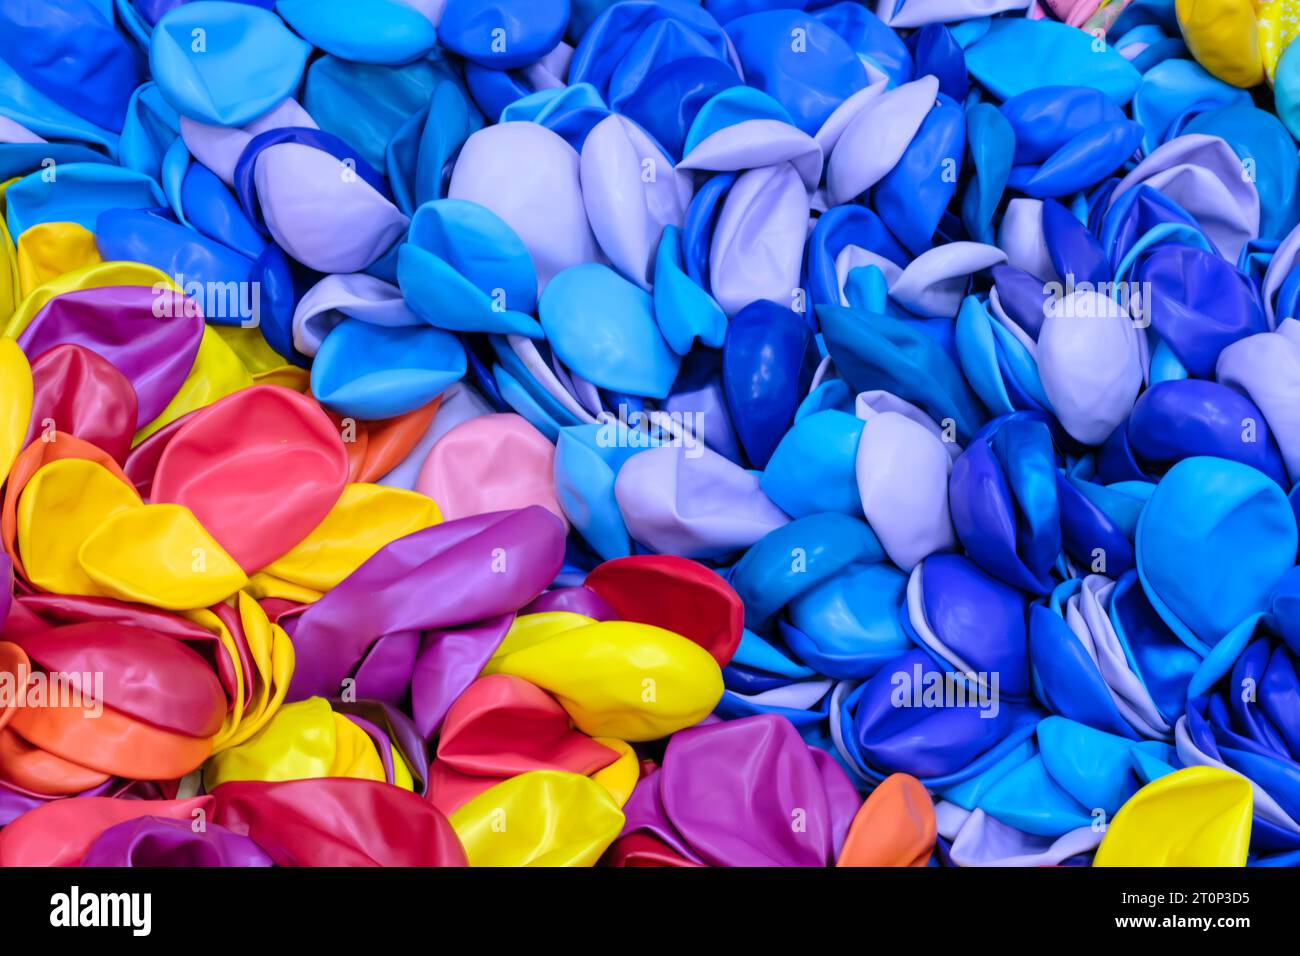 Stapel von Luftballons in Pastellfarben. Reinigen Sie die Vorlage für reine Baloons. Stockfoto